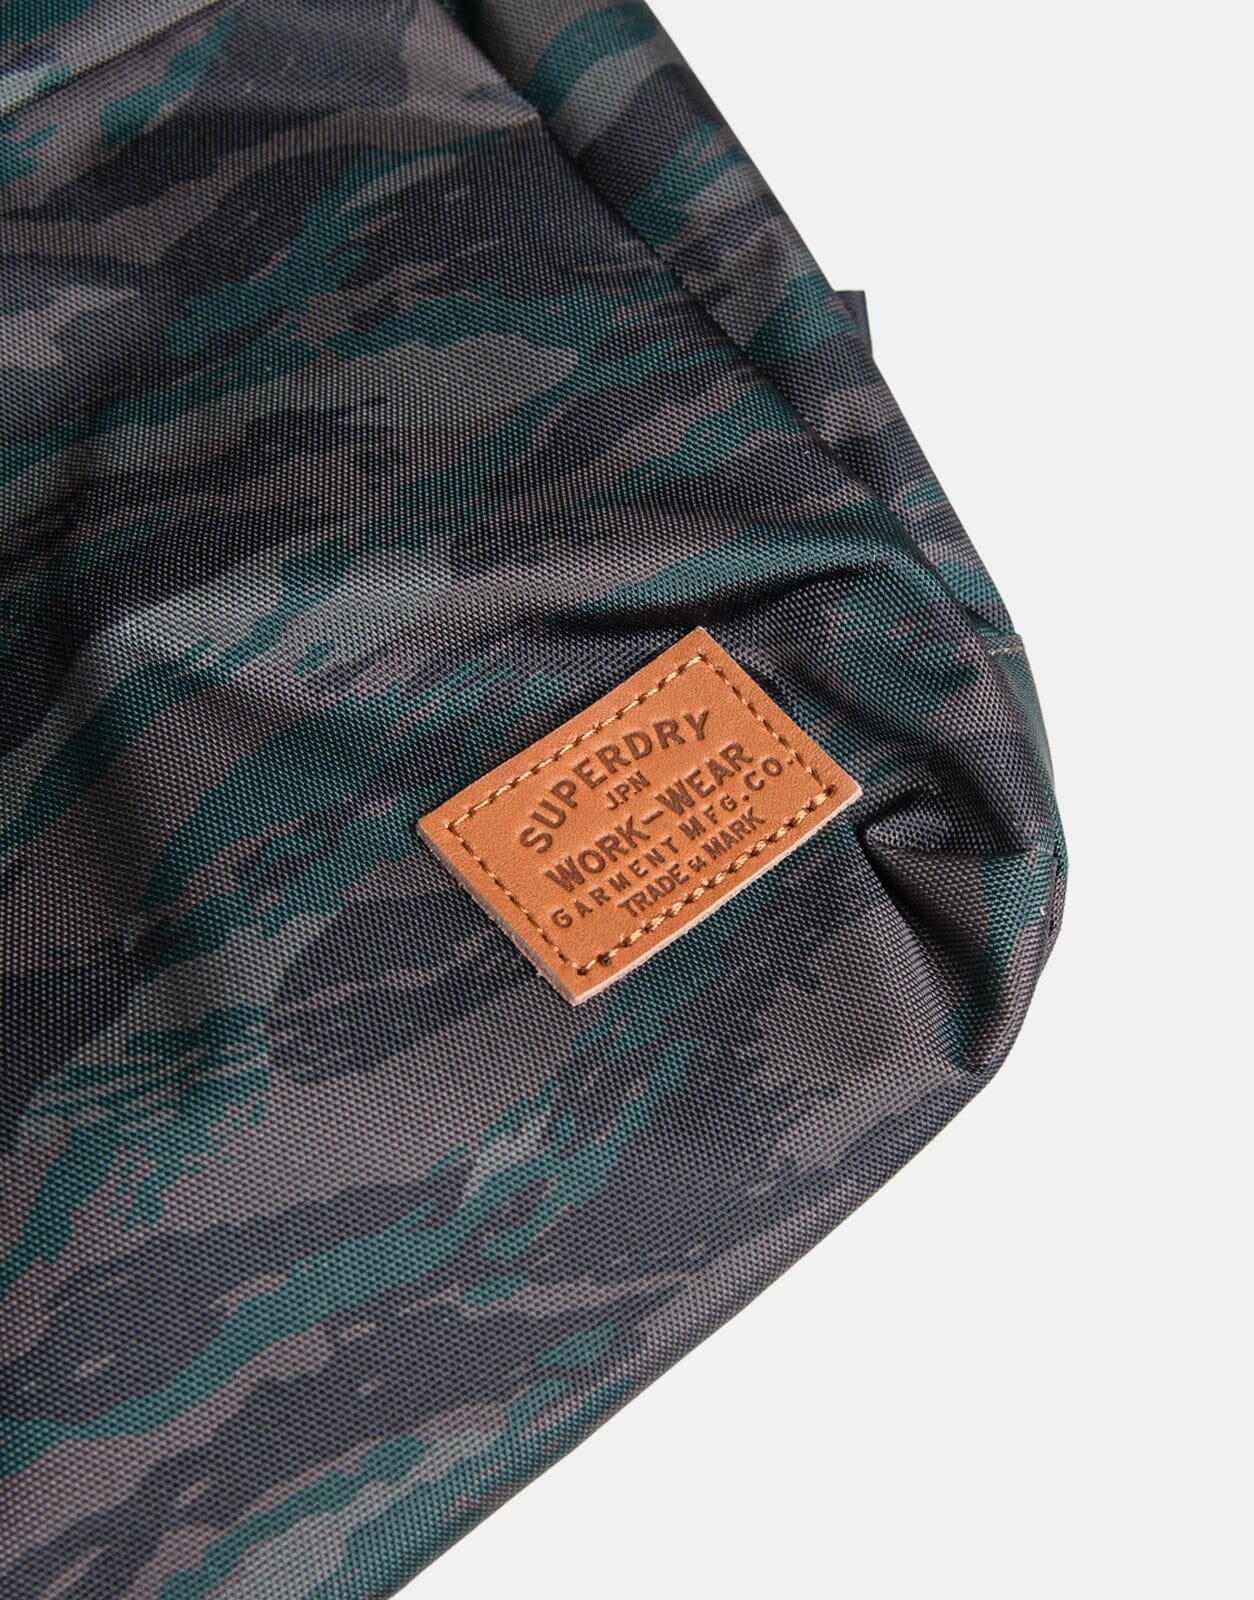 Superdry Printed Montana Bag Lizard Camo - Subwear